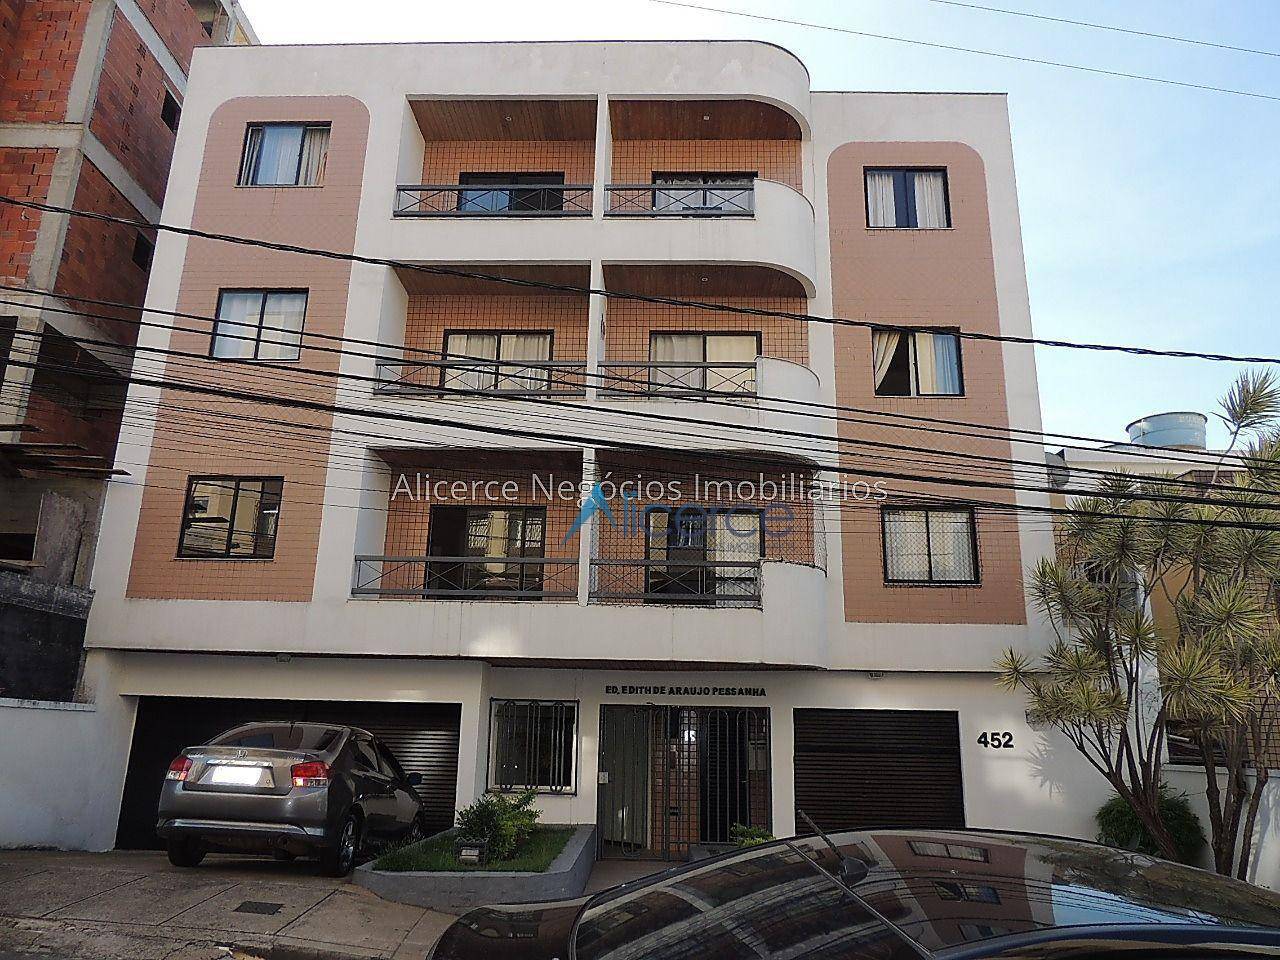 Cobertura com 3 dormitórios à venda, 110 m² por R$ 410.000,00 - São Mateus - Juiz de Fora/MG